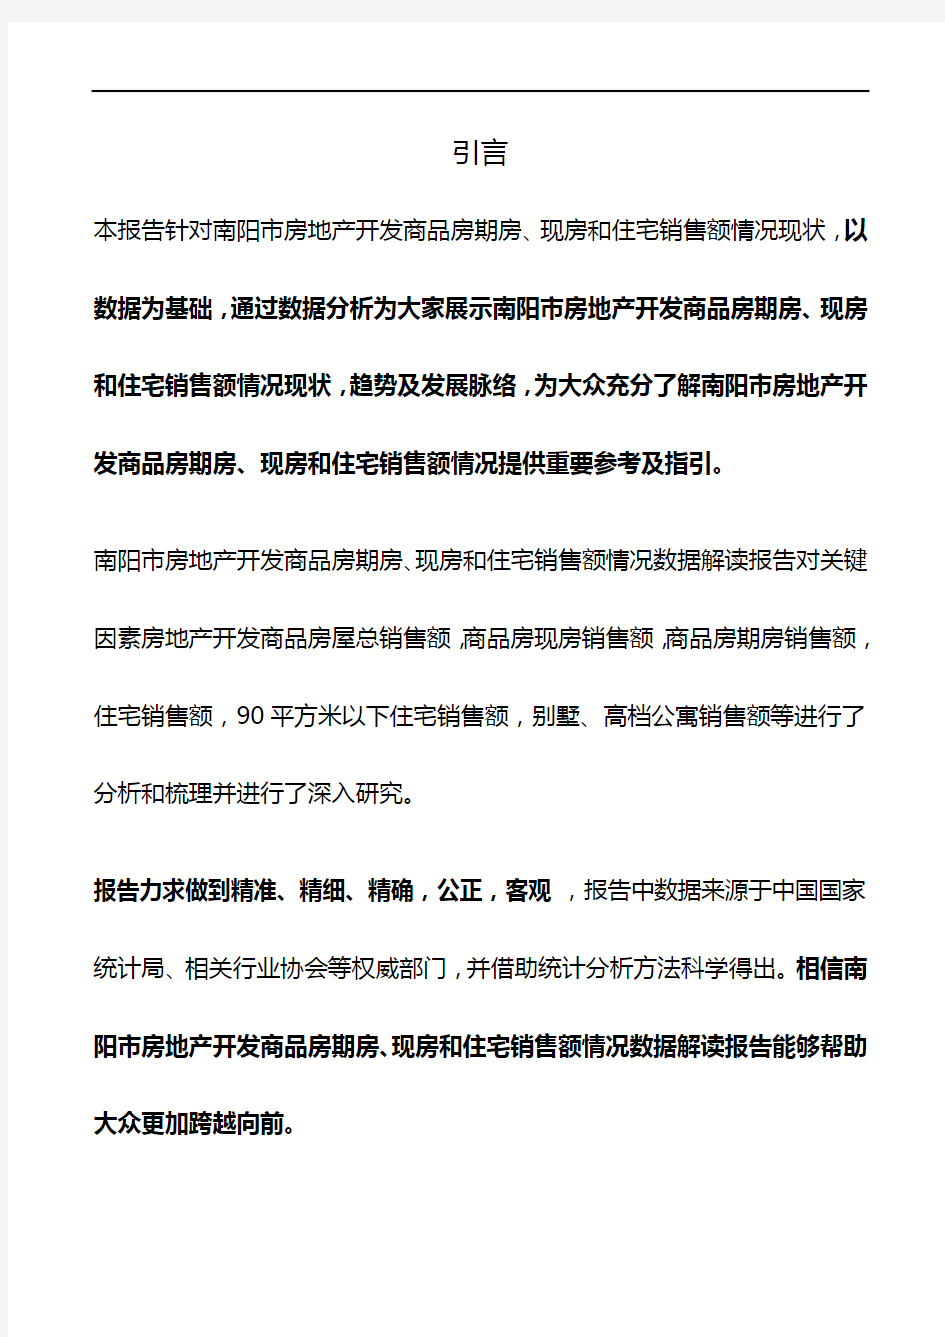 河南省南阳市房地产开发商品房期房、现房和住宅销售额情况数据解读报告2019版